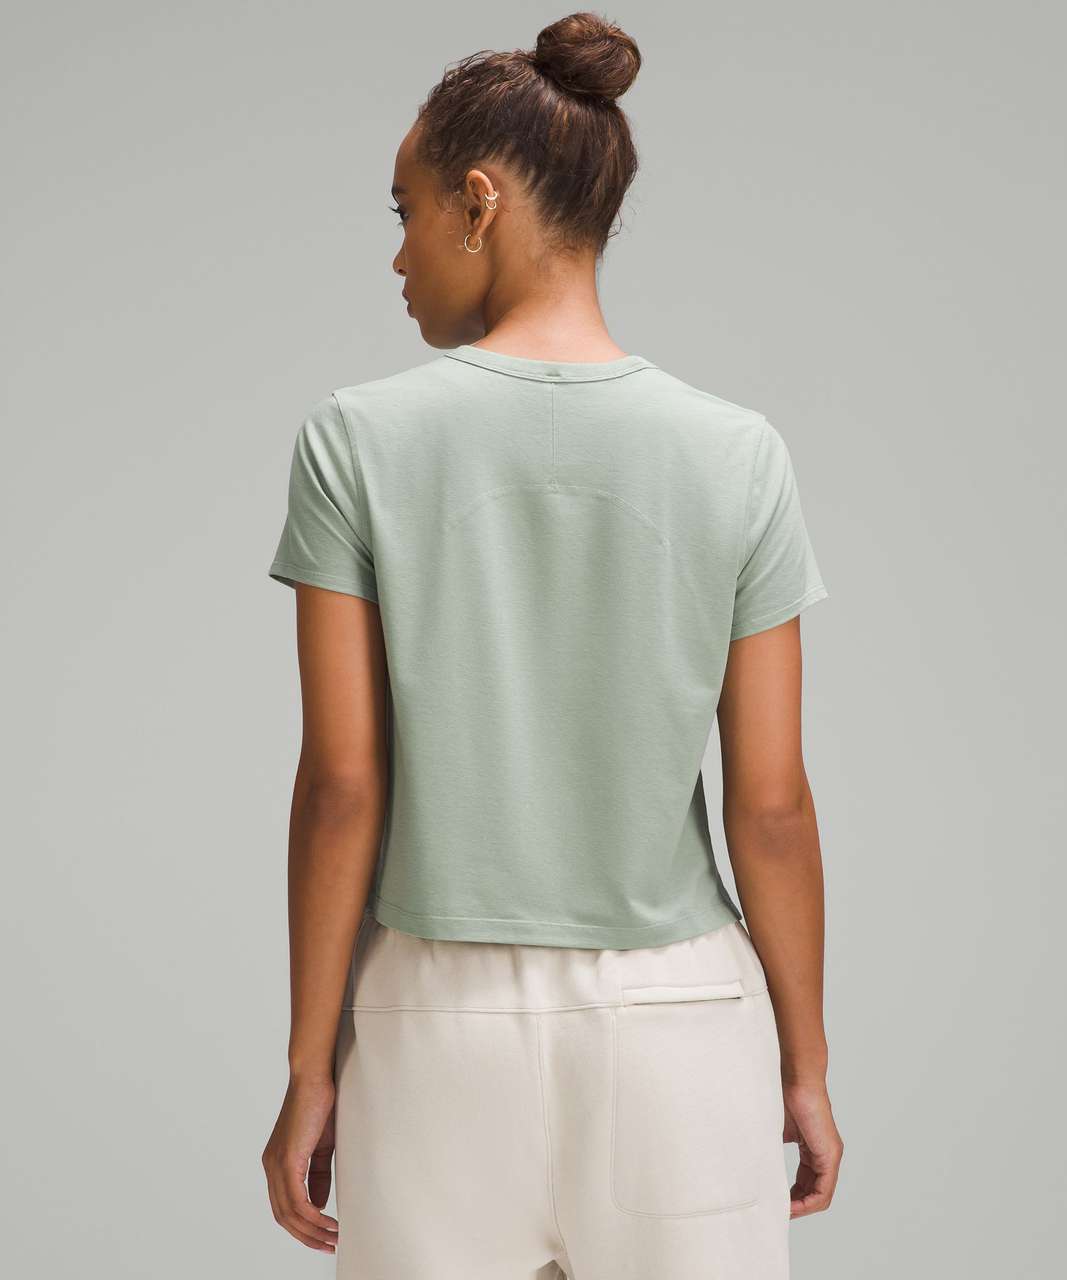 Lululemon Classic-Fit Cotton-Blend T-Shirt - Palm Court